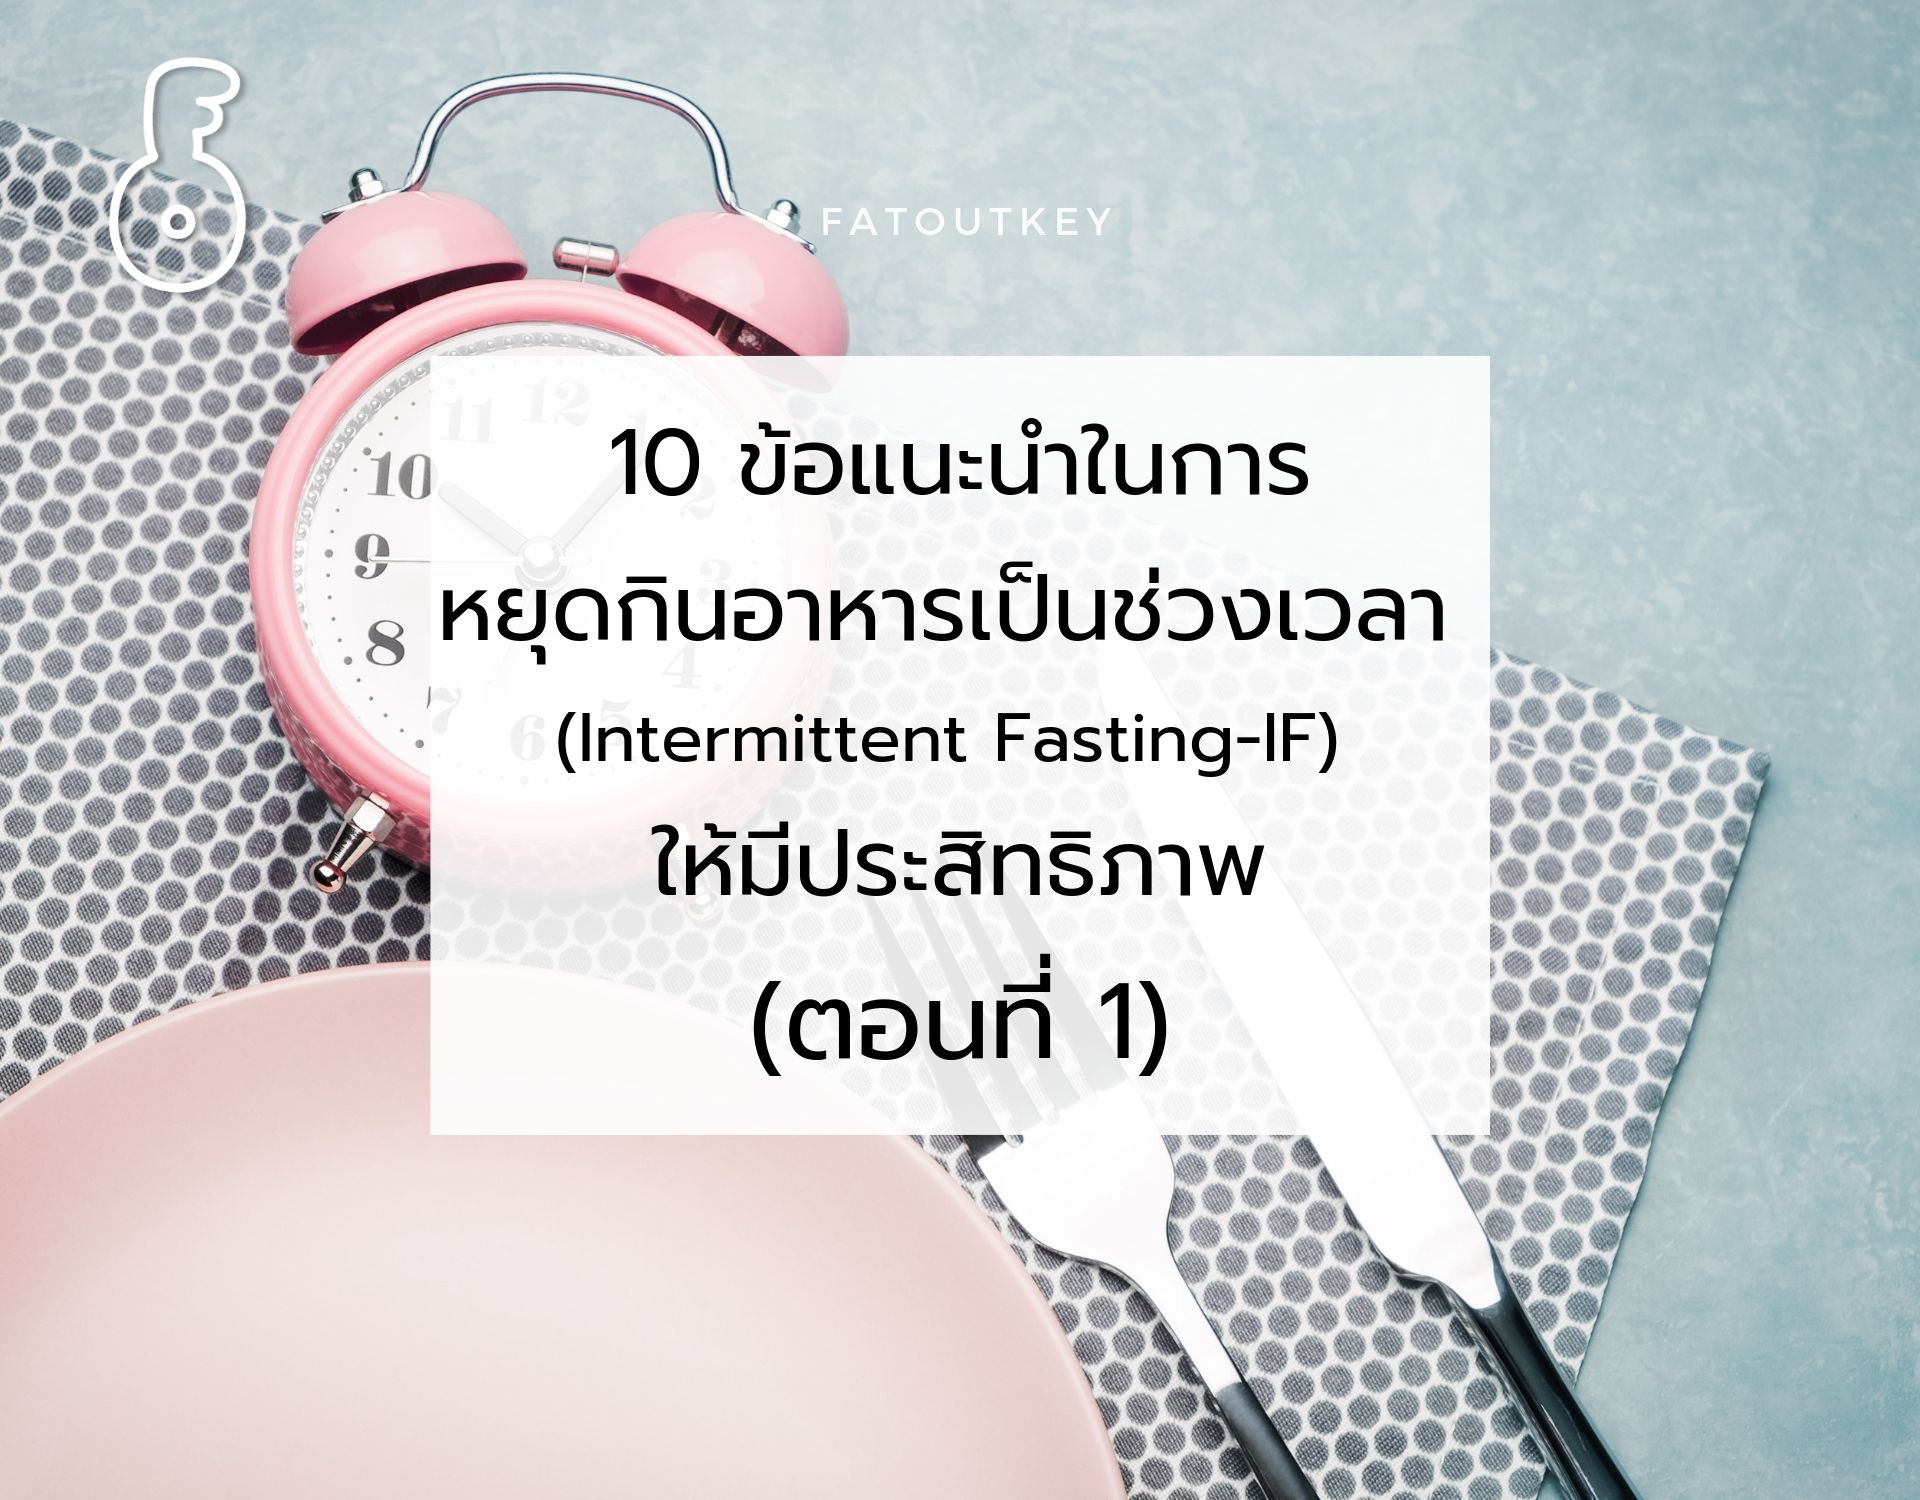 10 ข้อแนะนำในการหยุดกินอาหารเป็นช่วงเวลา (Intermittent Fasting-IF) ให้มีประสิทธิภาพ (ตอนที่ 1)